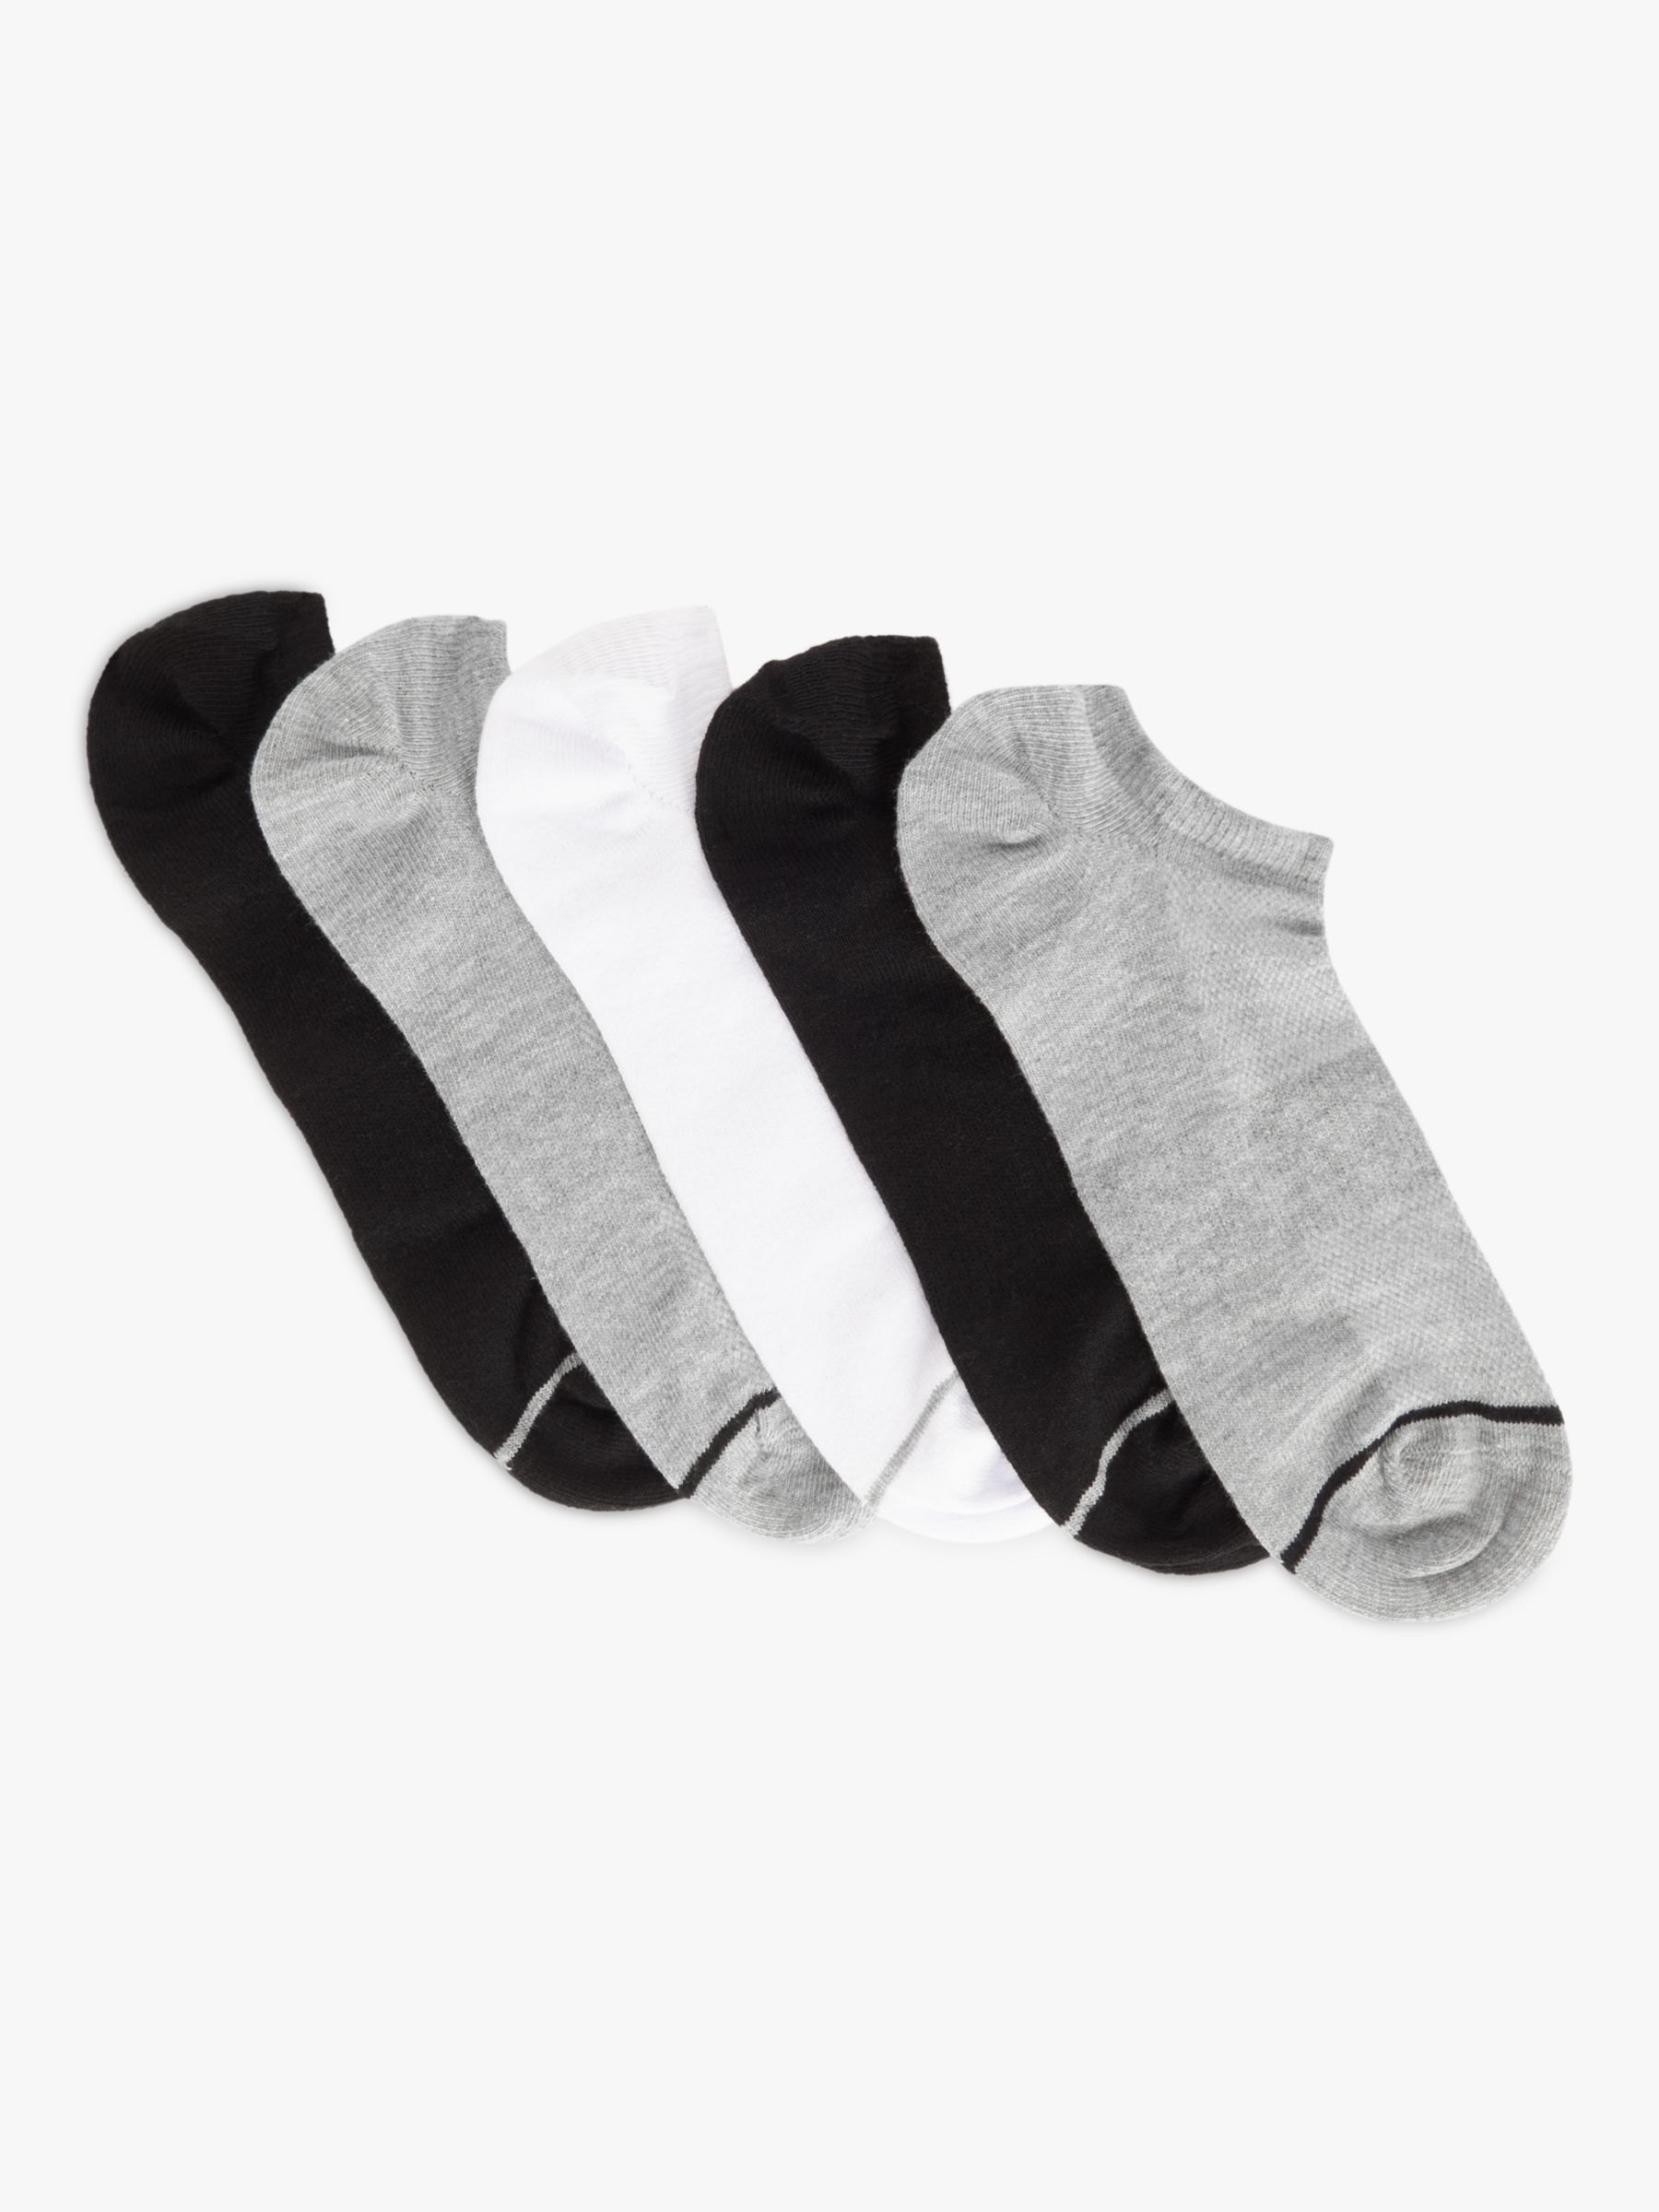 John Lewis ANYDAY Plain Trainer Liner Socks, Pack of 5, Black/White ...